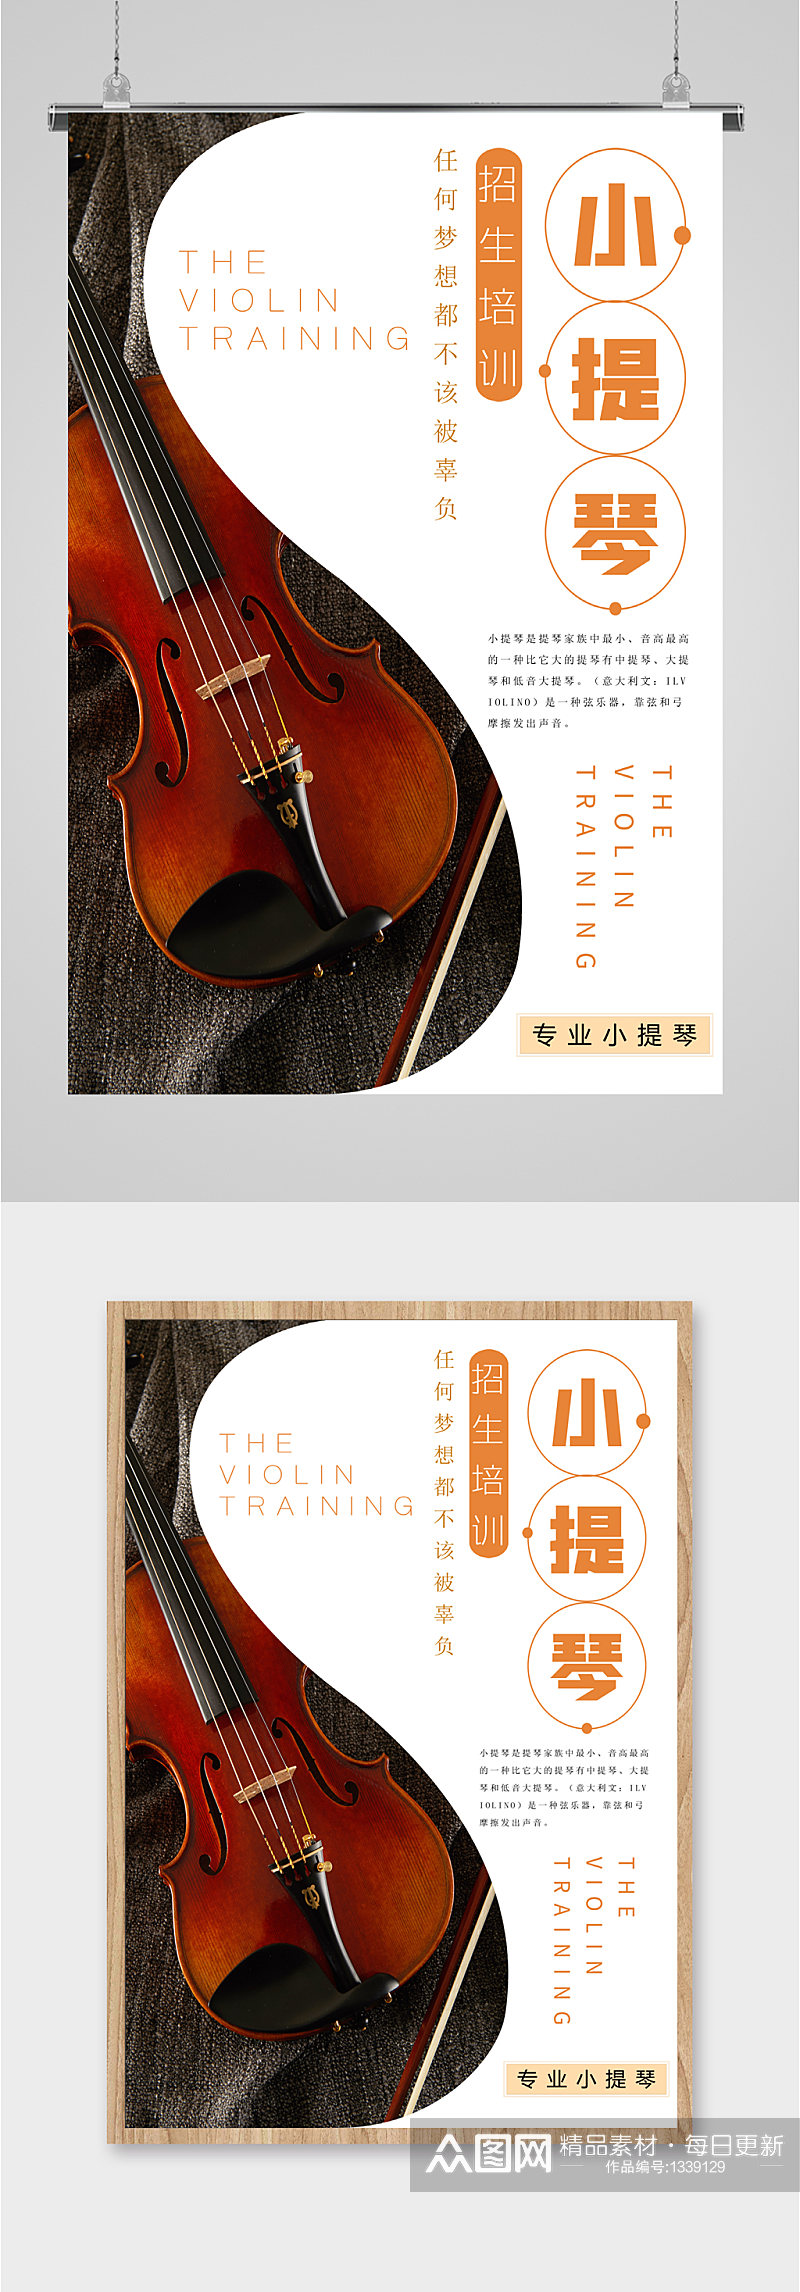 小提琴乐器培训班海报素材